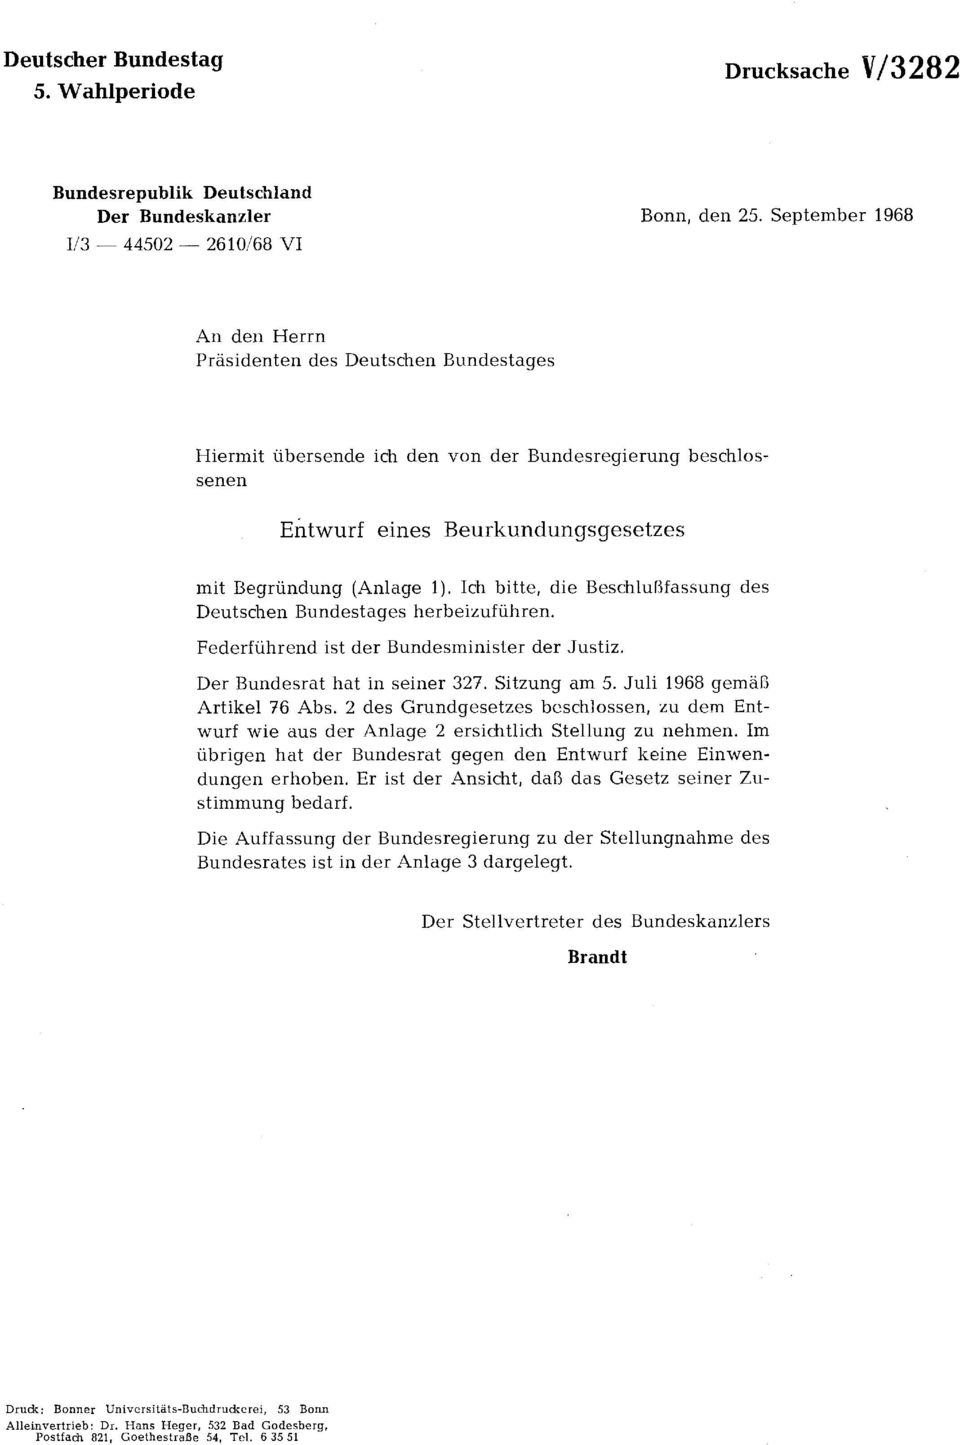 Ich bitte, die Beschlußfassung des Deutschen Bundestages herbeizuführen. Federführend ist der Bundesminister der Justiz. Der Bundesrat hat in seiner 327. Sitzung am 5. Juli 1968 gemäß Artikel 76 Abs.